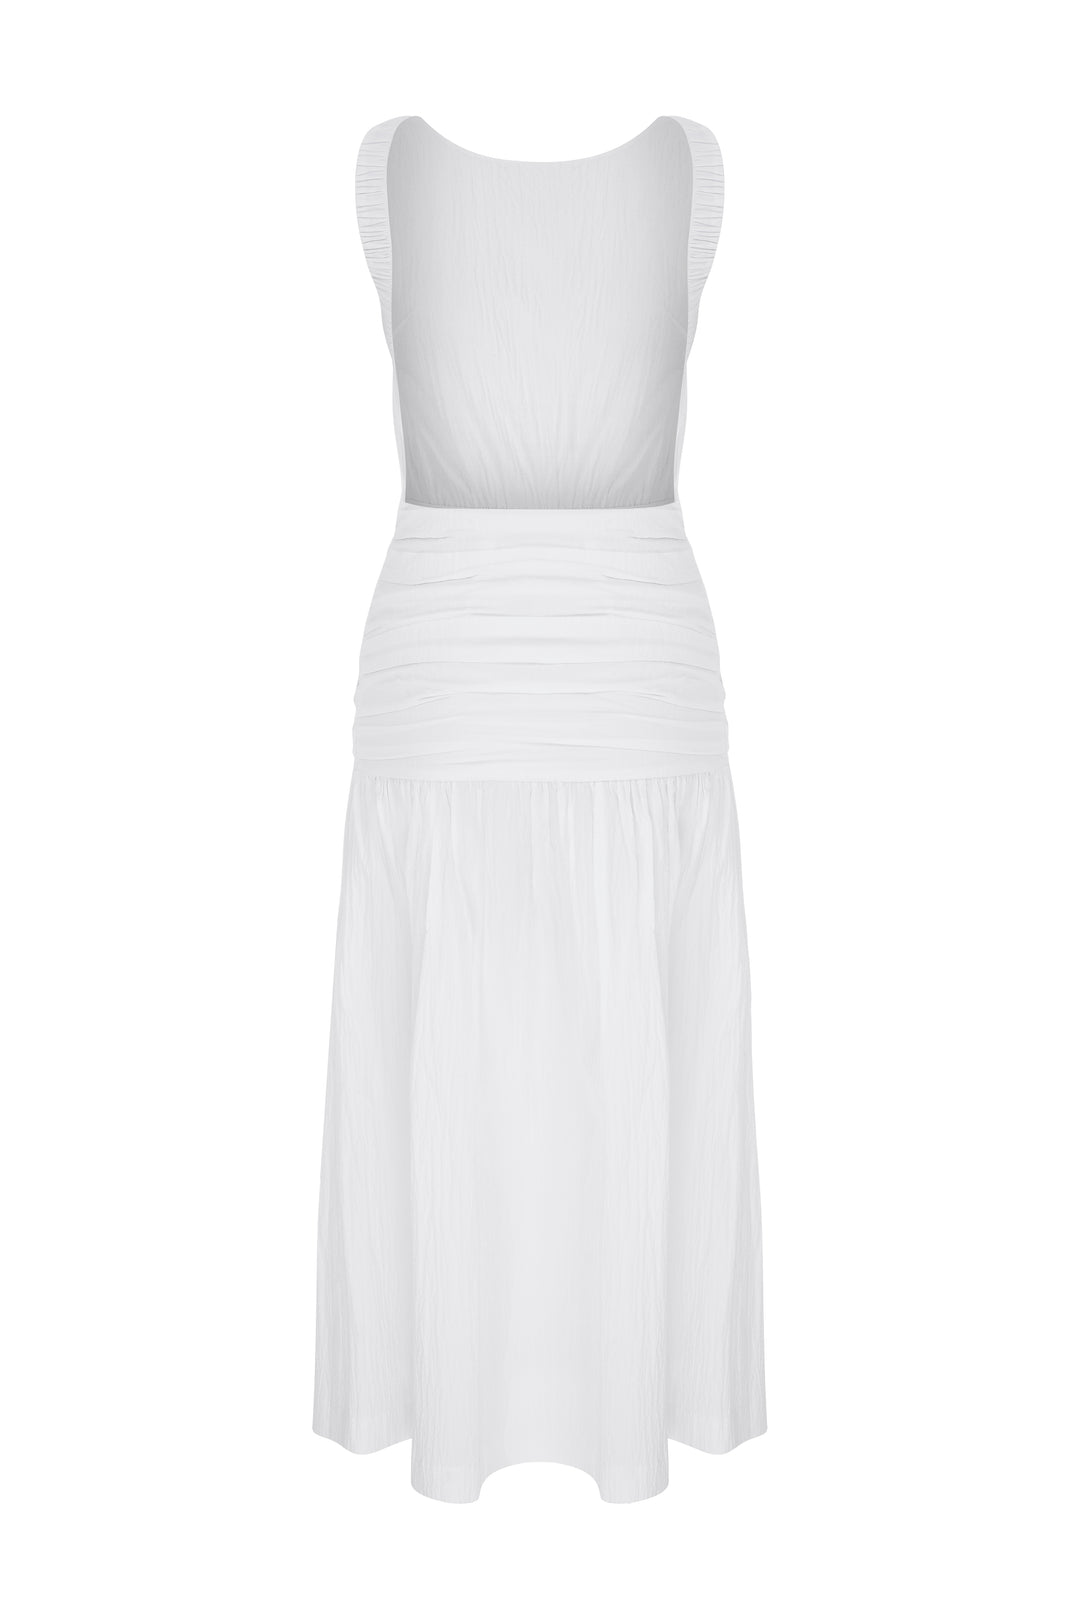 BRUNA - Open Back Midi White Dress